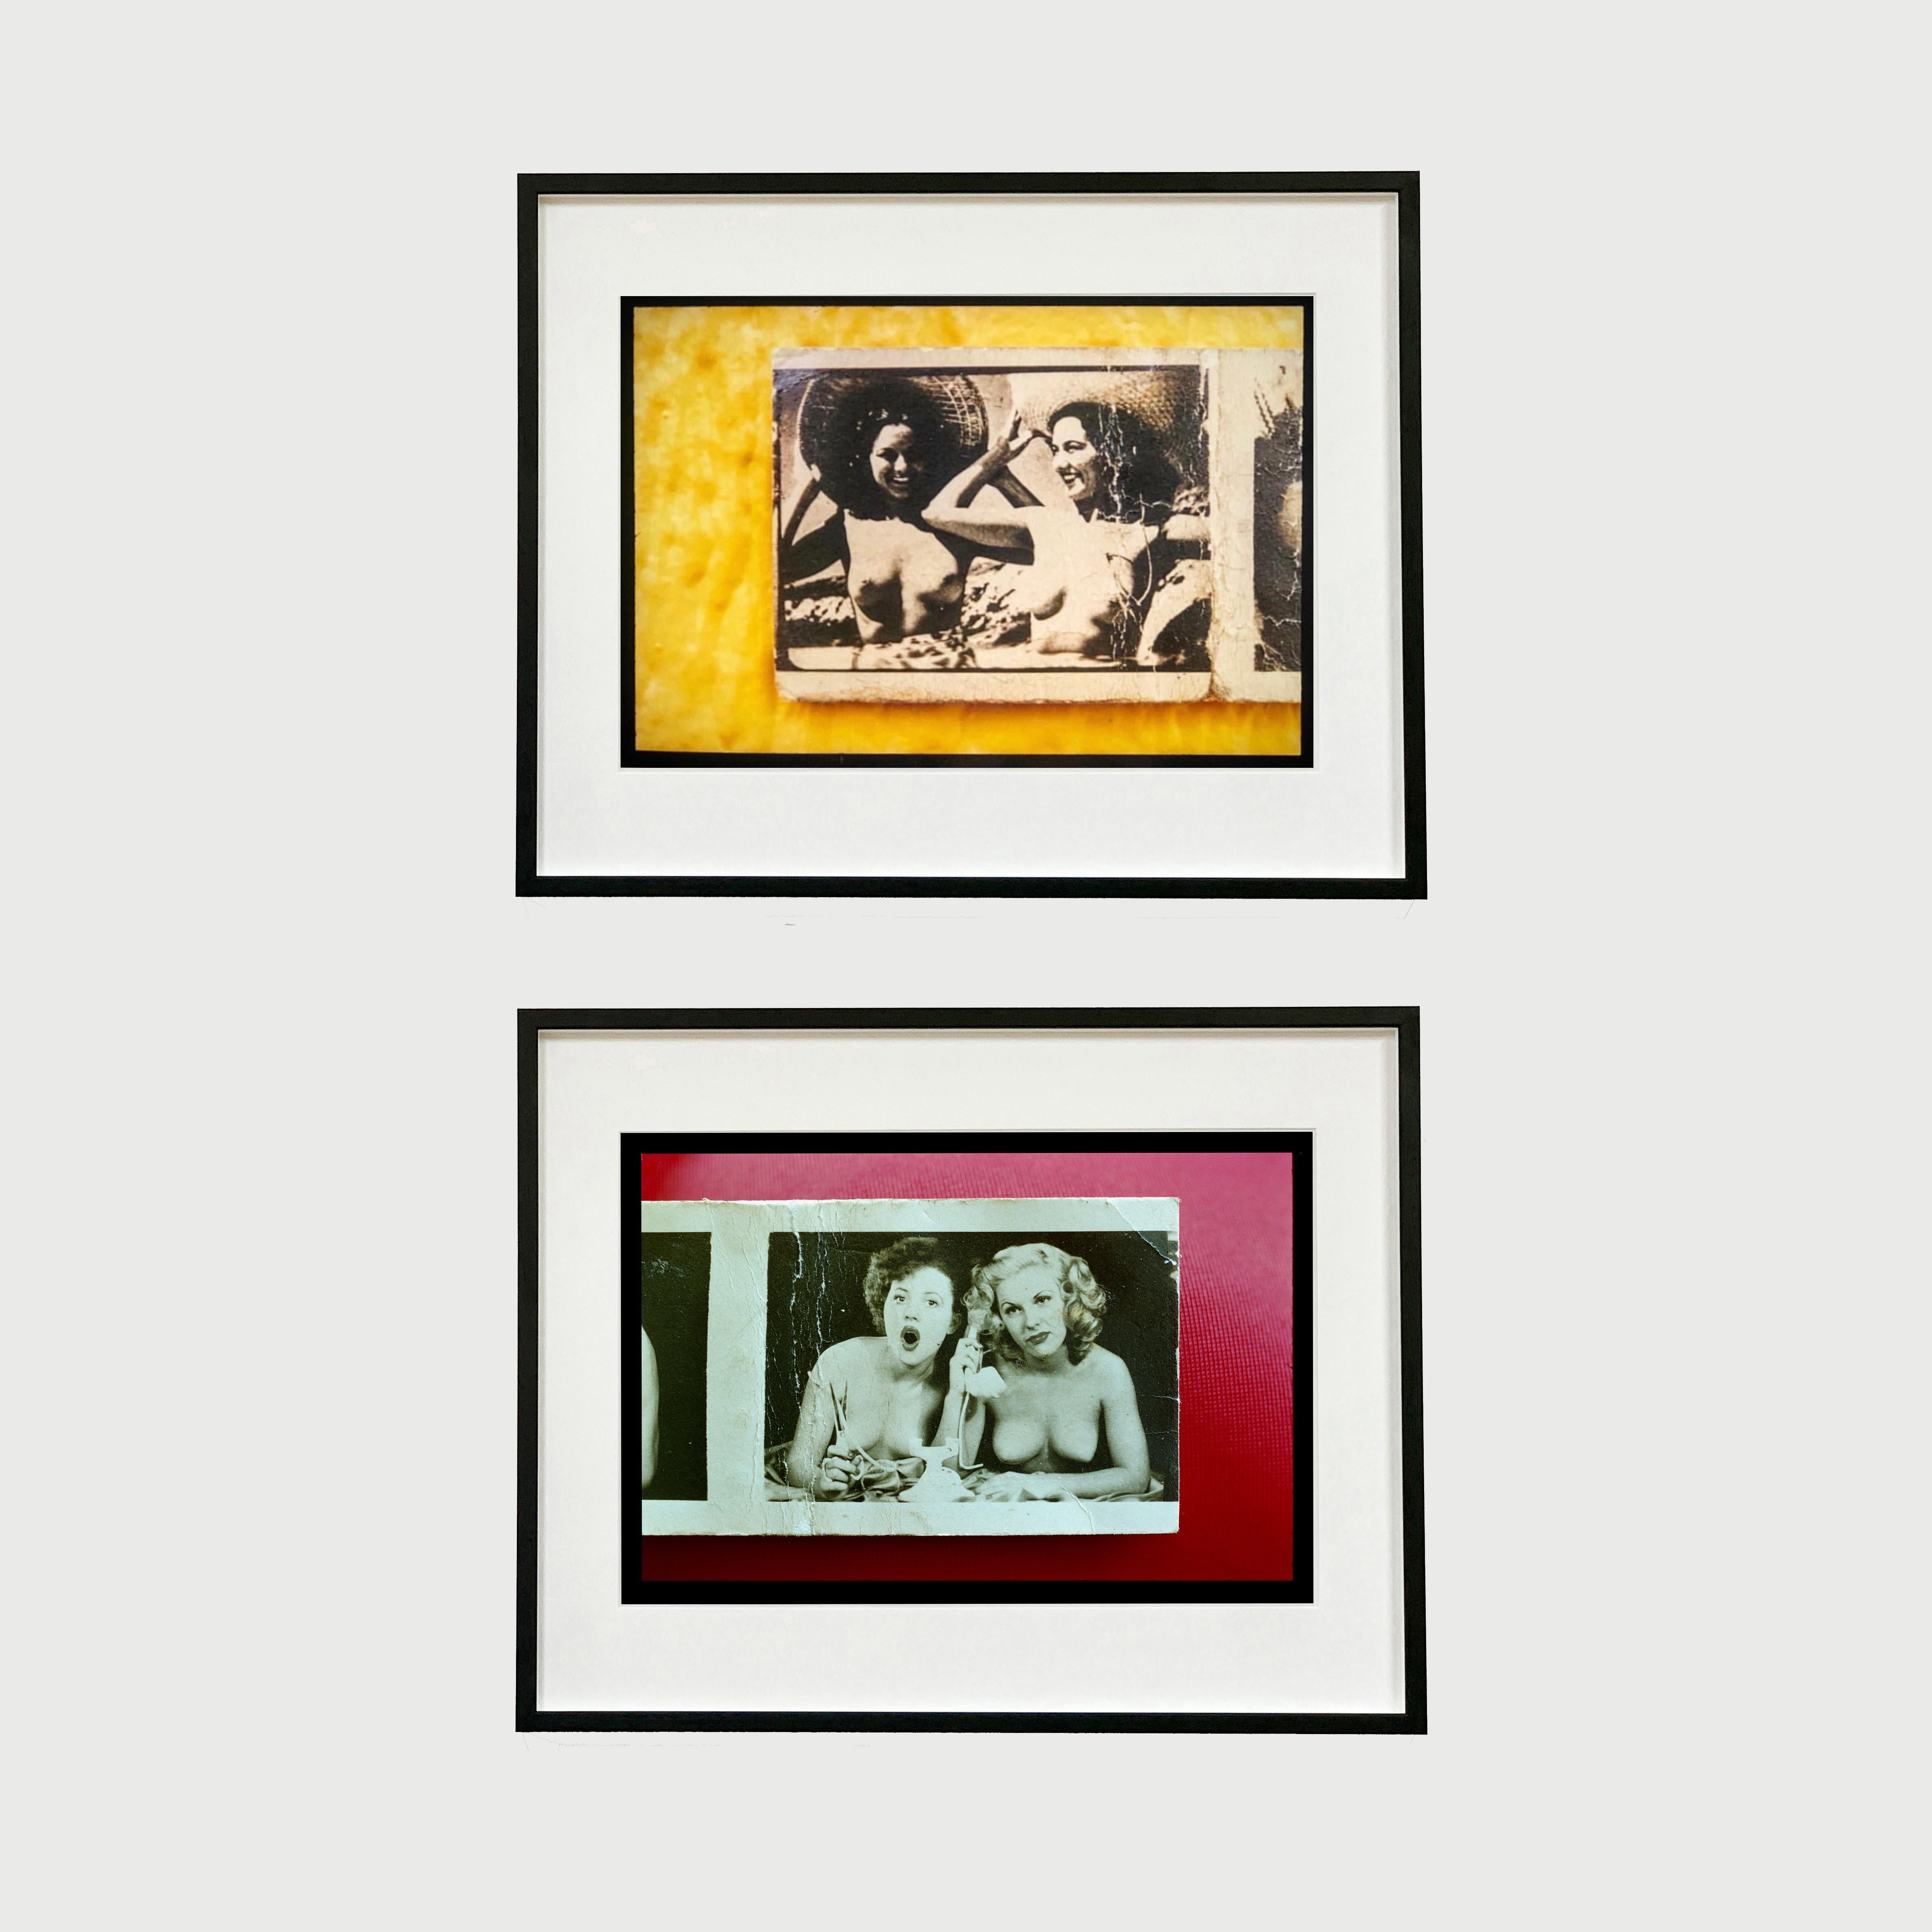 Jersey Girls Magenta, Foto aus Richard Heeps Jersey Shore-Serie.
Vintage-Streichholzbriefchen vom New Yorker Chelsea Flea Market, die Aktfotos aus den 1940er Jahren zeigen, wurden von Richard Heeps in dieser Farbfotografie neu interpretiert.

Dieses